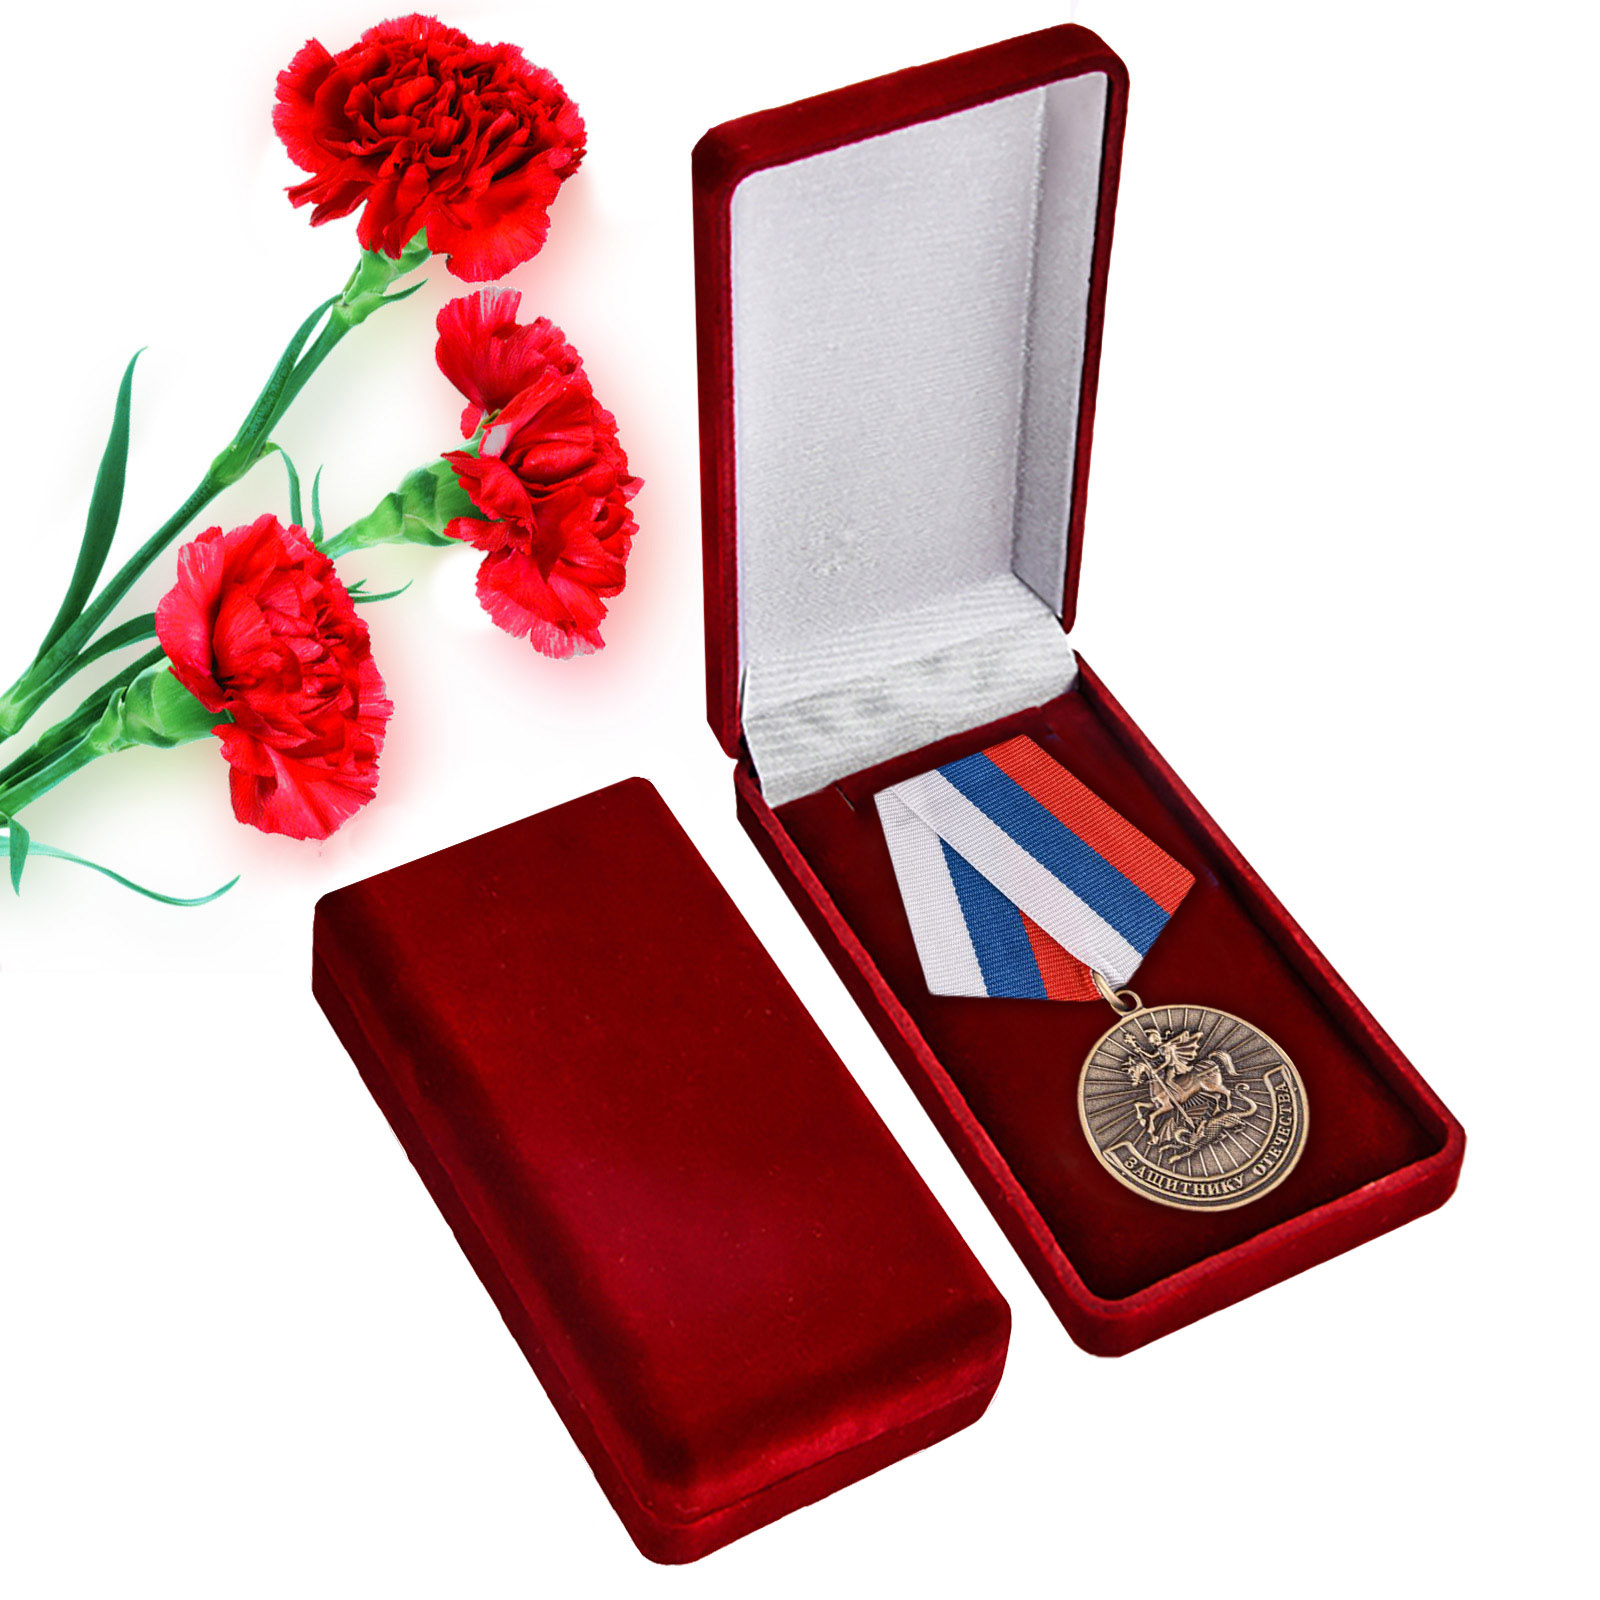 Купить памятную медаль Родина Мужество Честь Слава с доставкой или самовывозом